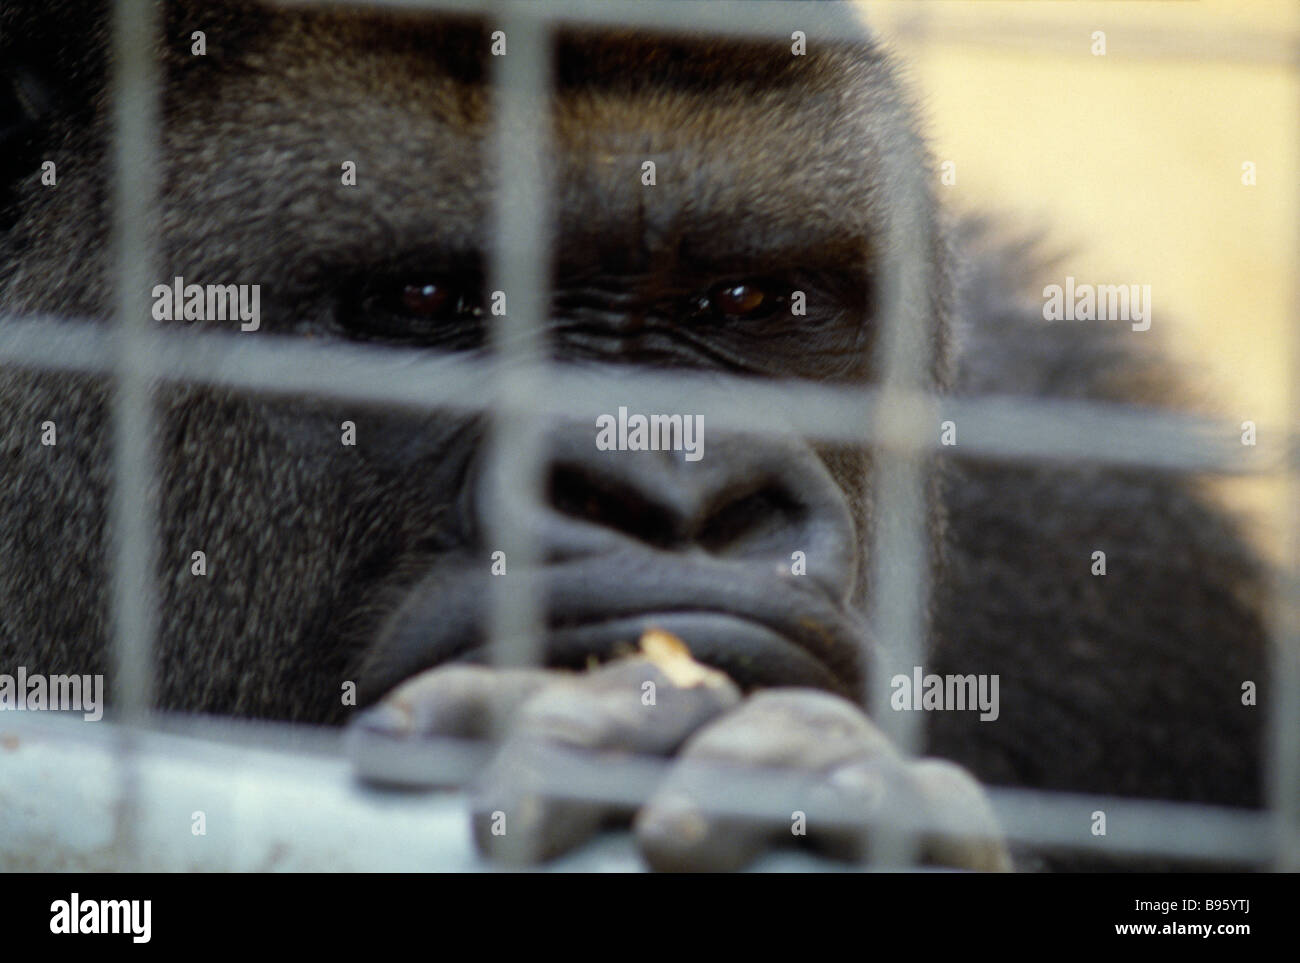 Animaux singes Gorilla gorille de plaine de l'Ouest en captivité au zoo de Chessington, regardant à travers les barreaux de la cage. Banque D'Images